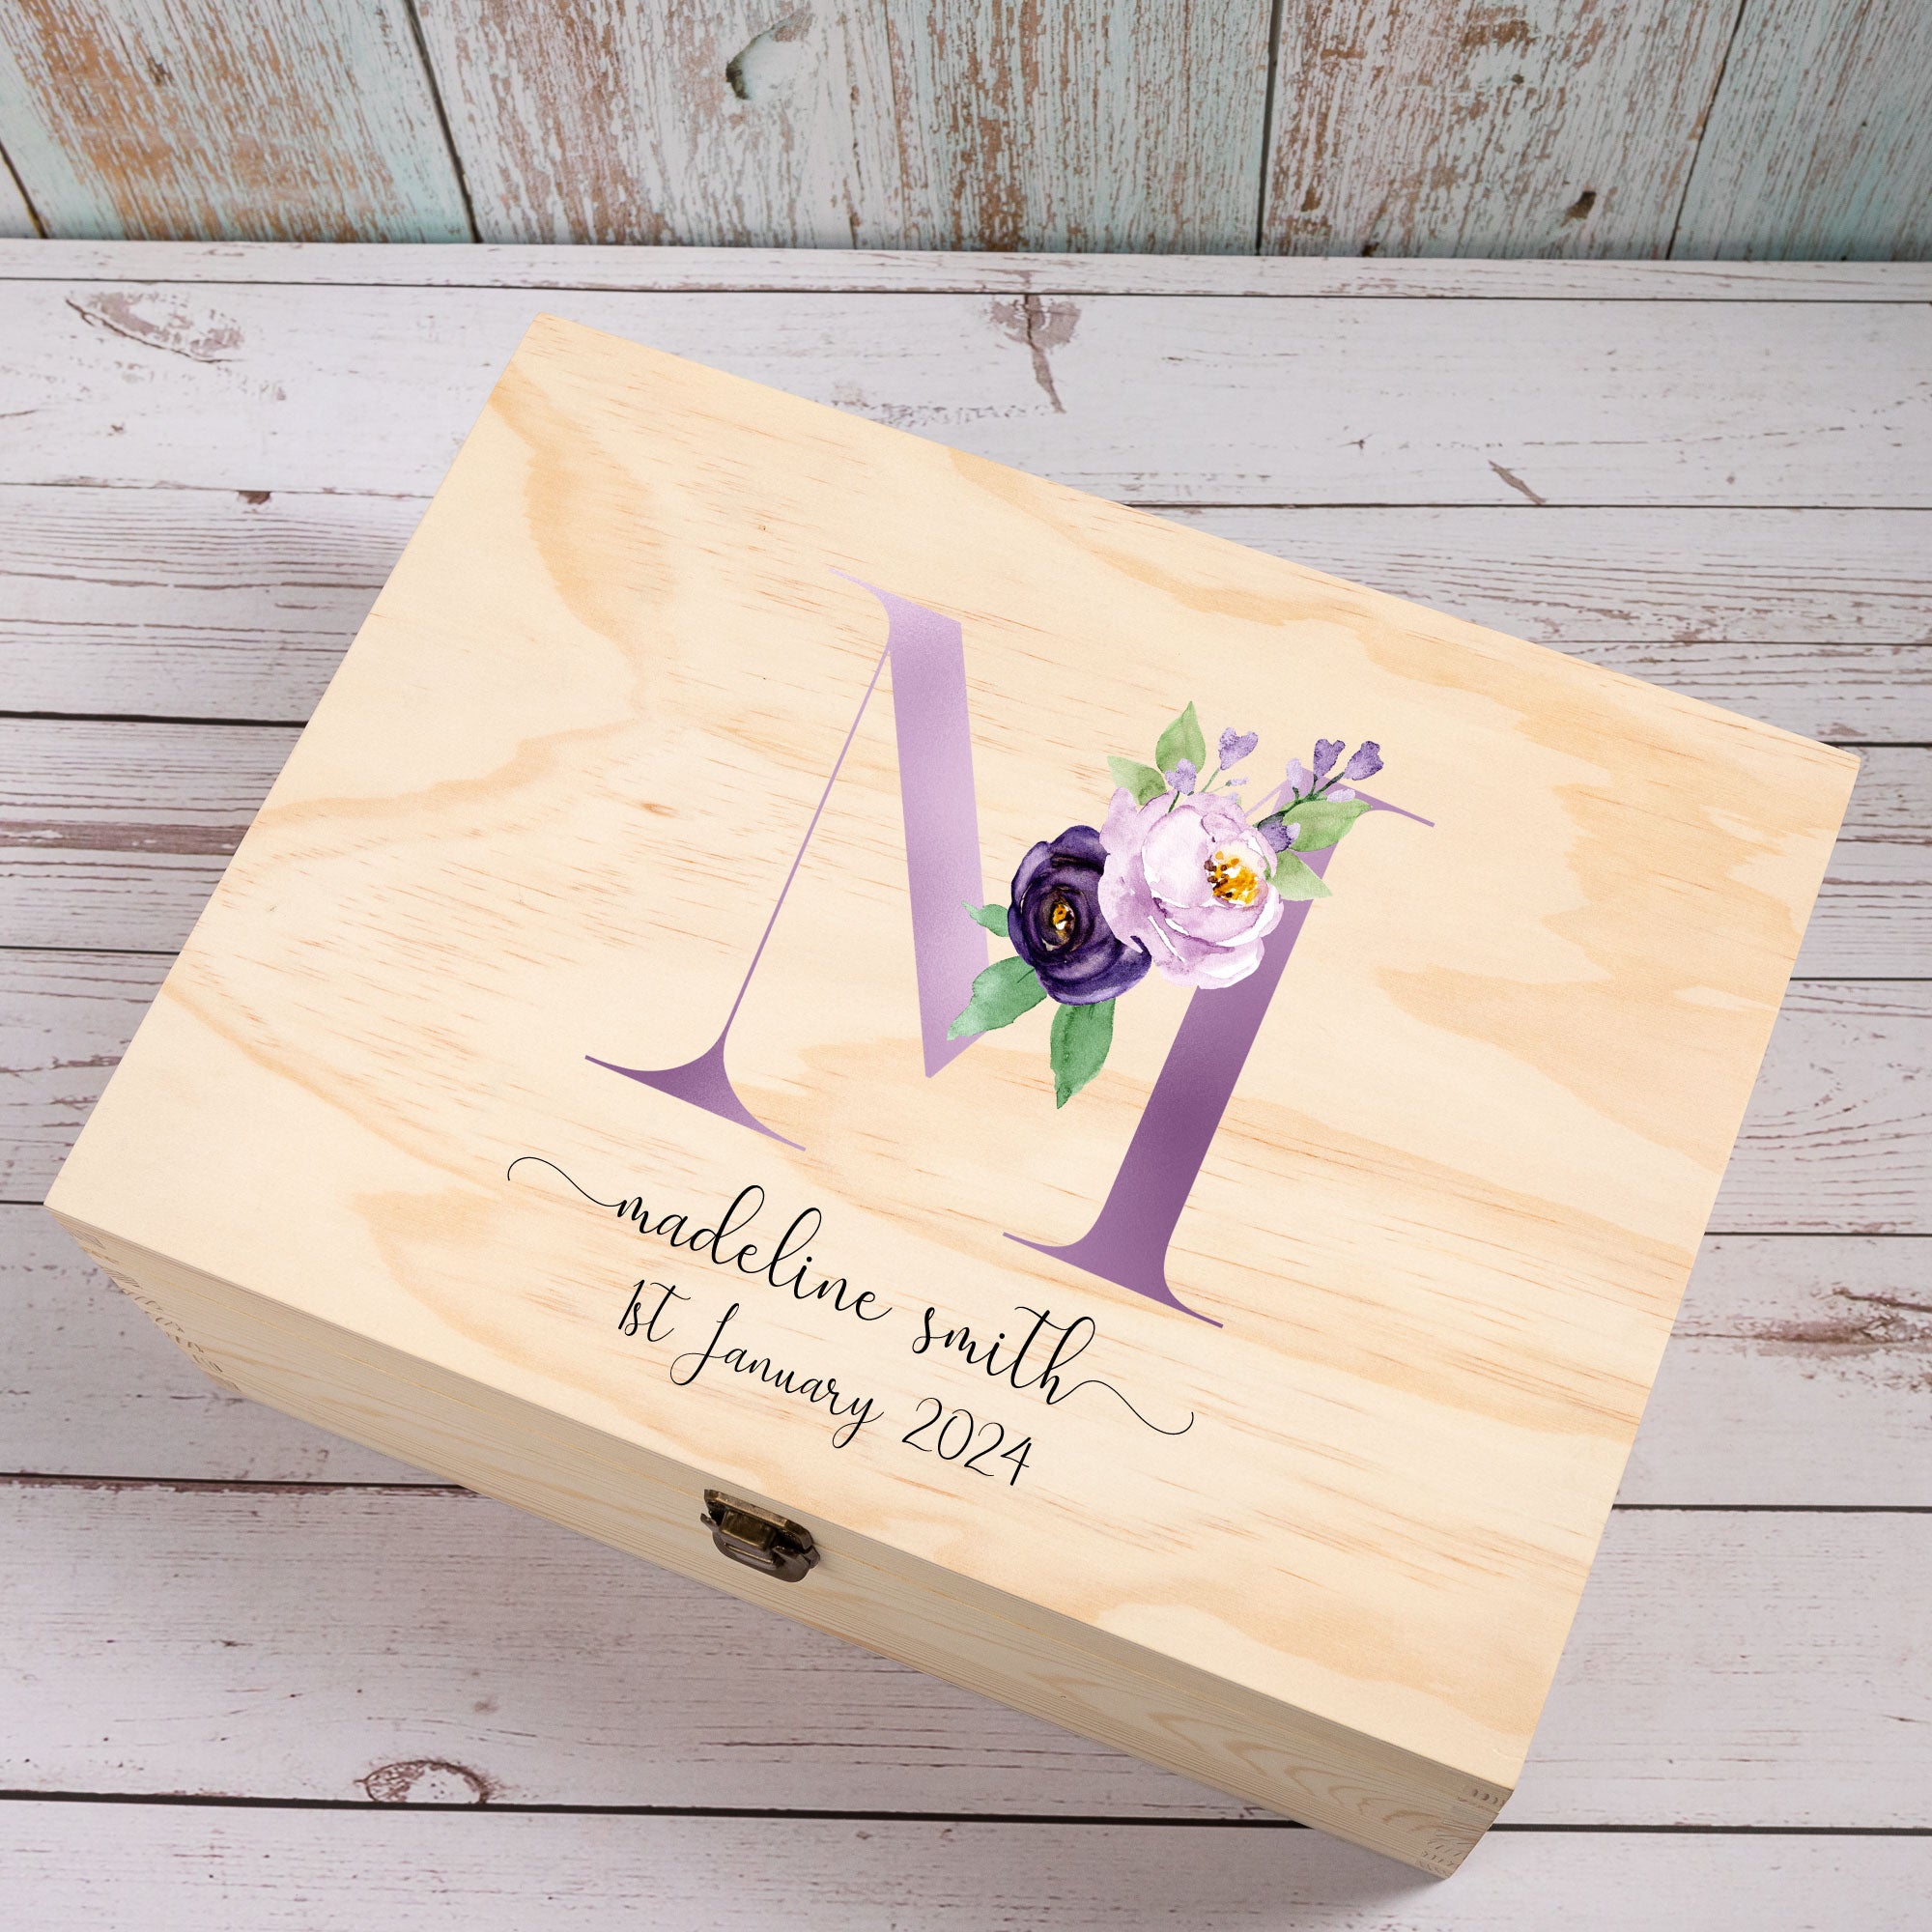 Personalised Wooden Keepsake box, Newborn Baby Baptism Gift, Memory Treasure Box, New Mom Gift